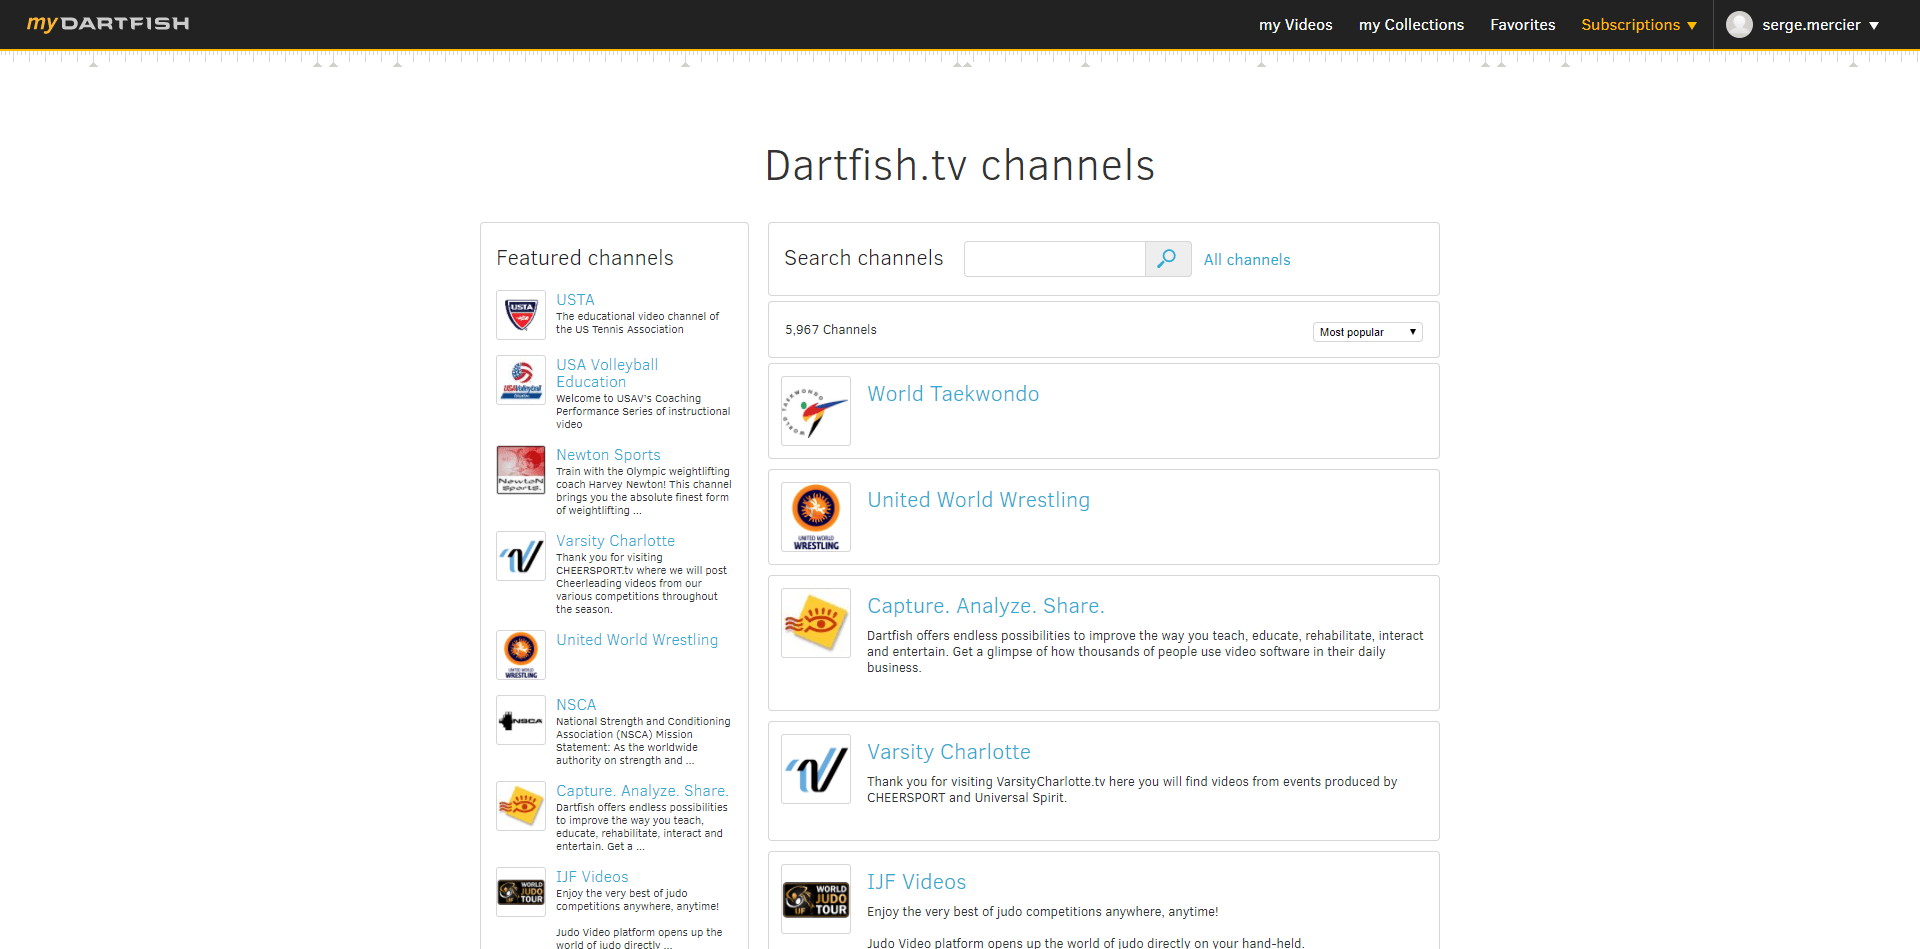 Dartfish.tv in organizations.